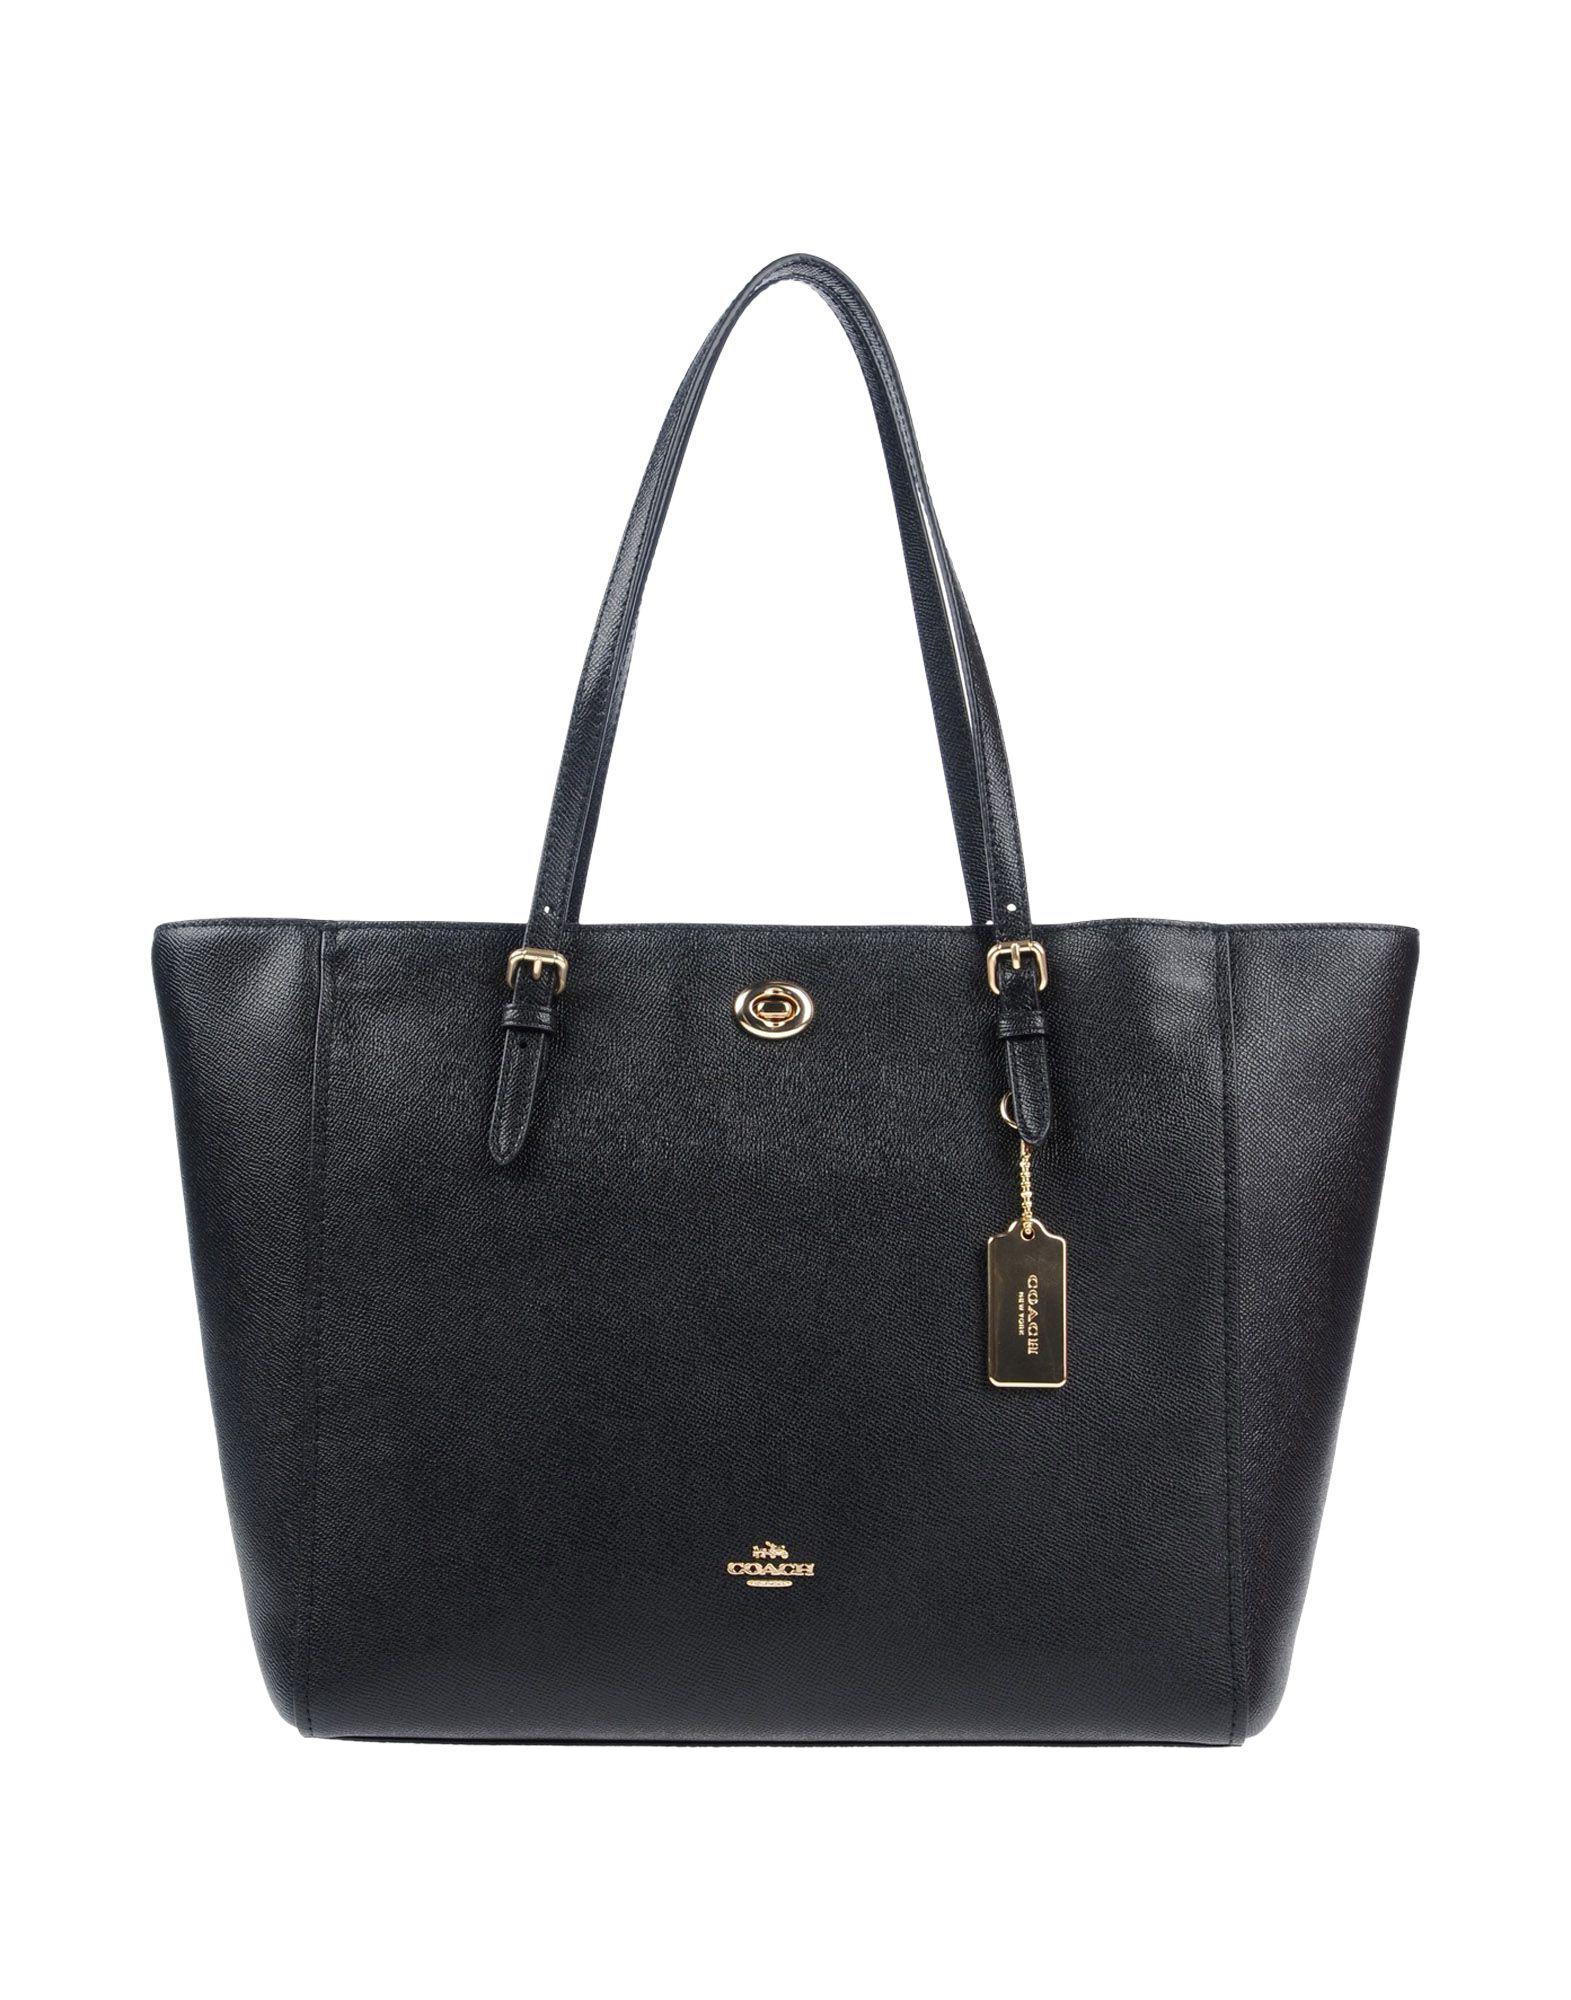 COACH Leather Handbag in Black - Lyst